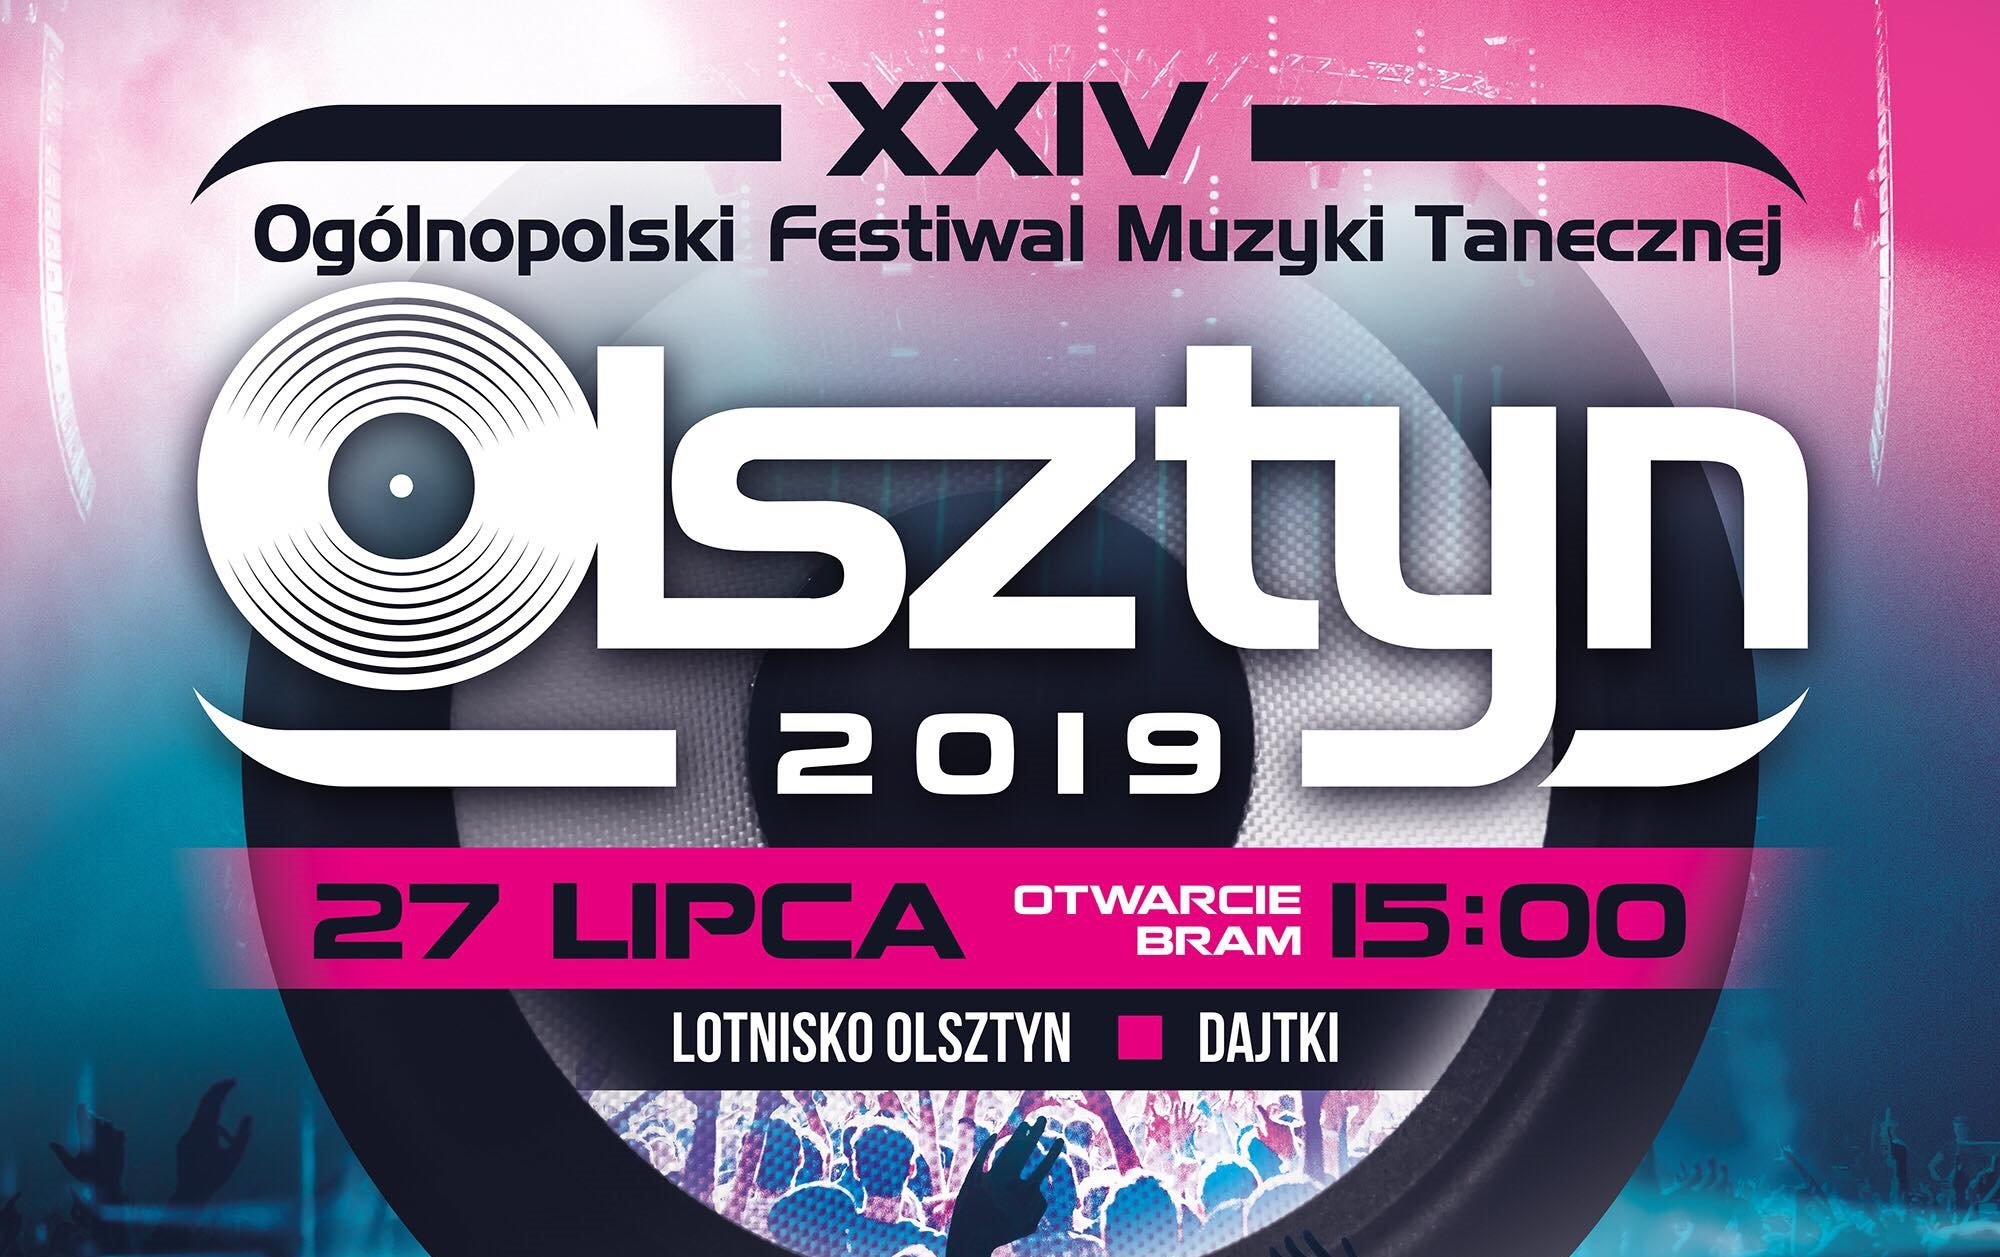 Ogólnopolski Festiwal Muzyki Tanecznej - Olsztyn 2019 - Lista wykonawców! 